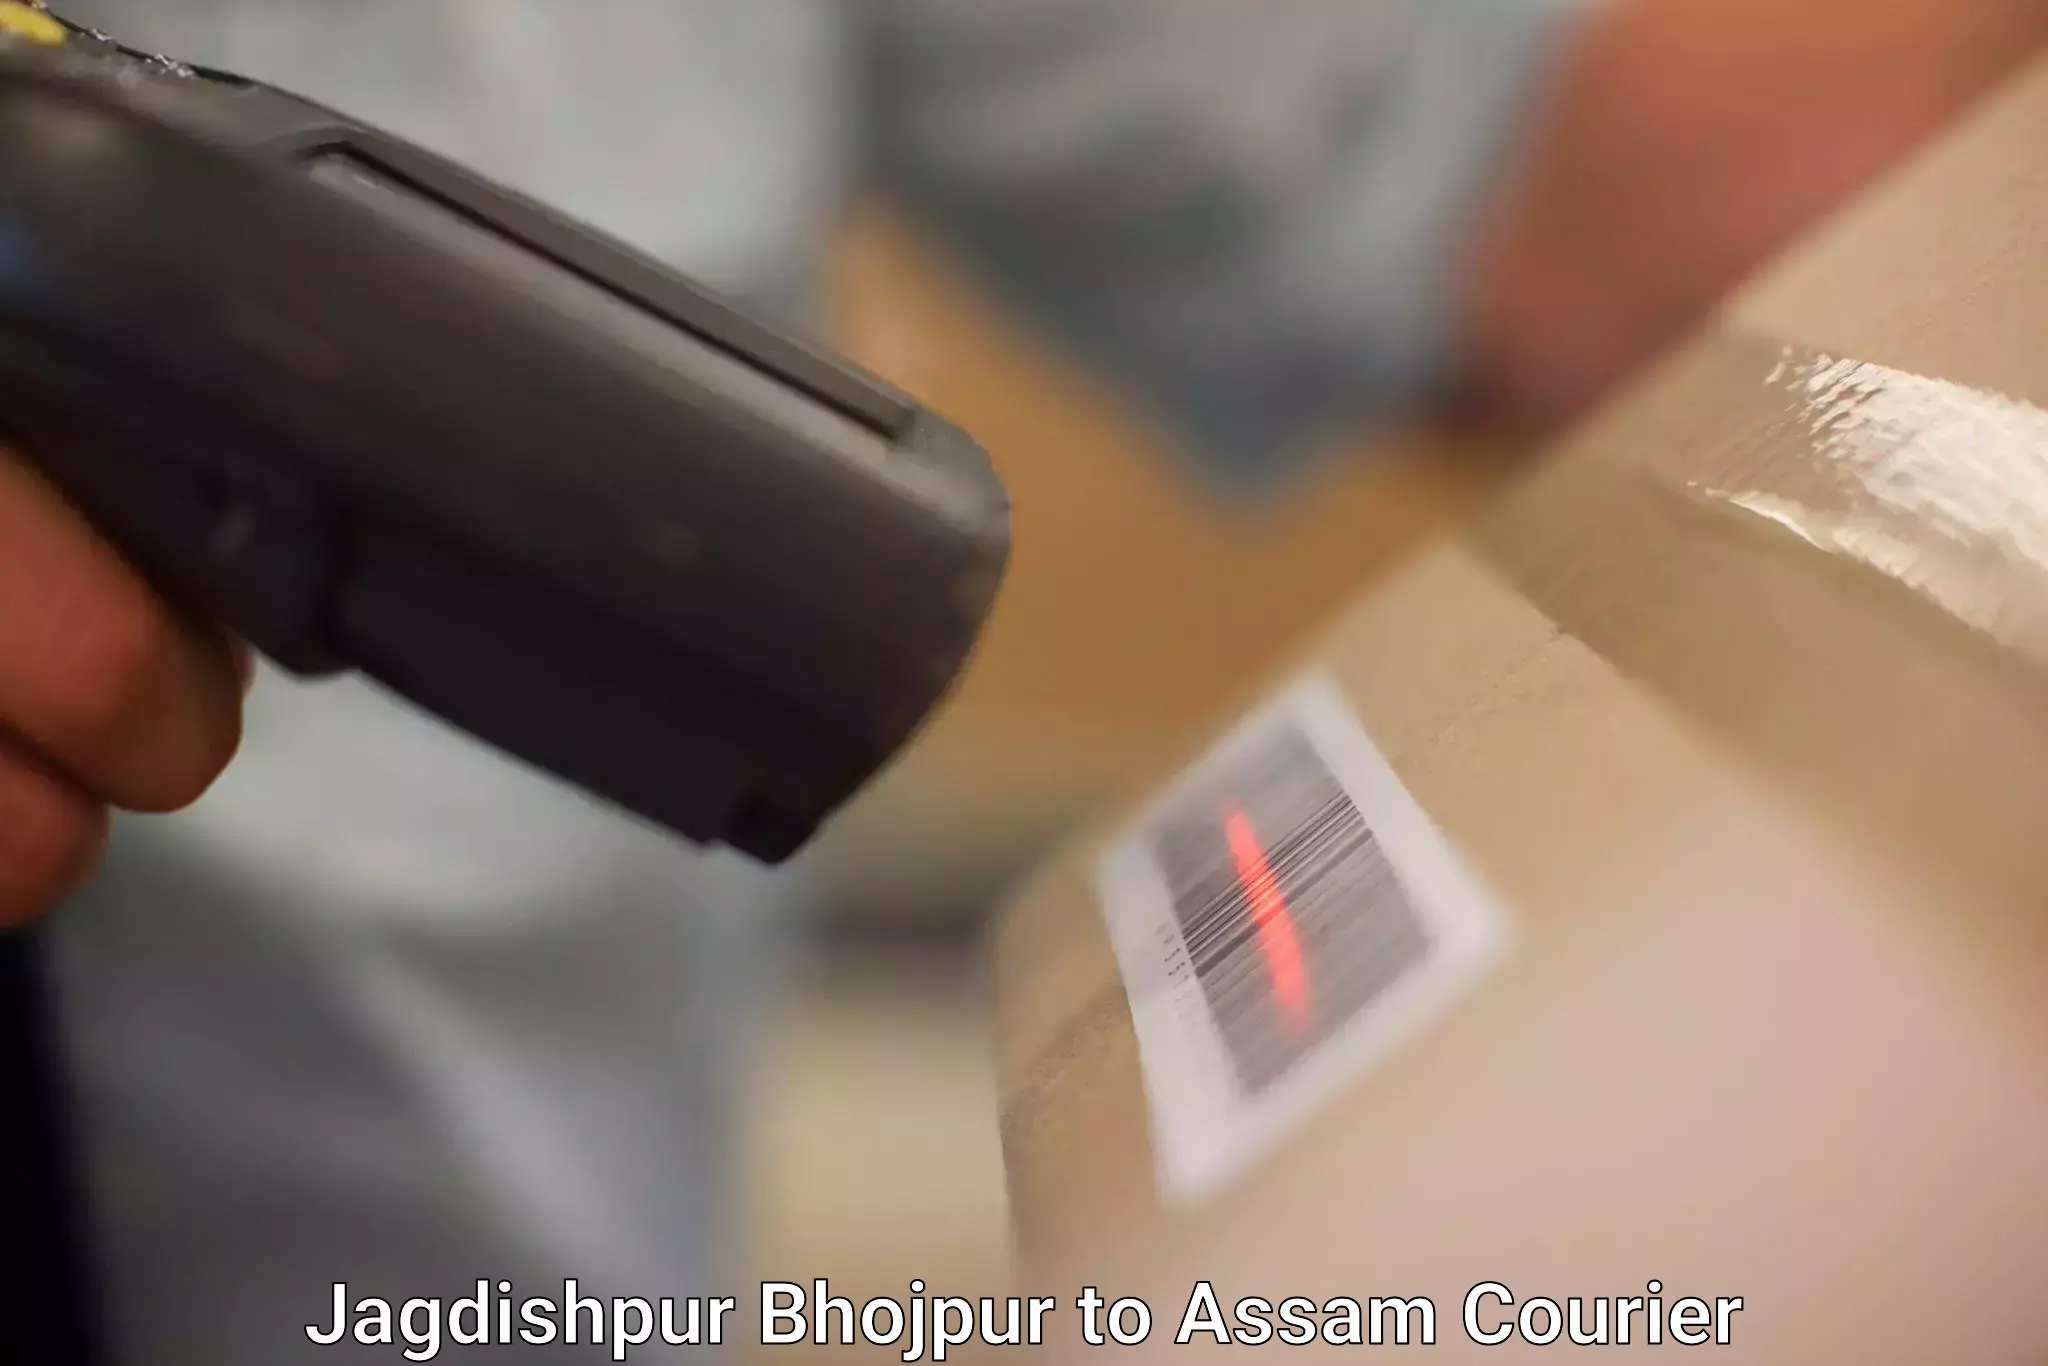 Professional courier handling Jagdishpur Bhojpur to Badarpur Karimganj